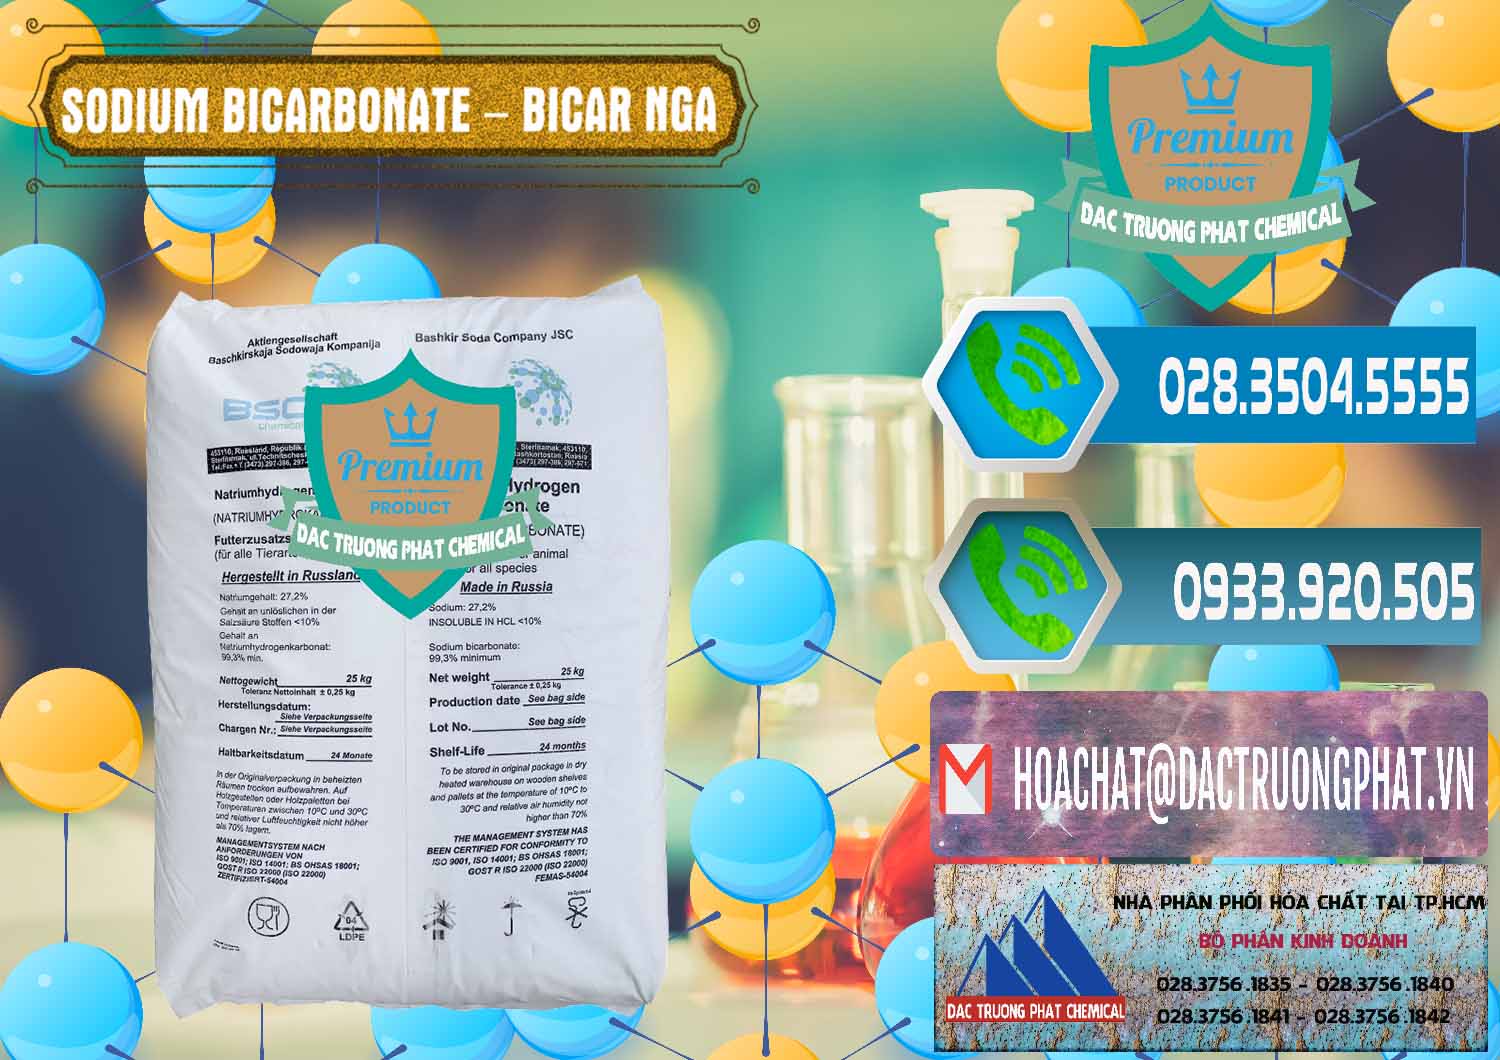 Cty chuyên kinh doanh & bán Sodium Bicarbonate – Bicar NaHCO3 Nga Russia - 0425 - Nơi cung cấp ( kinh doanh ) hóa chất tại TP.HCM - congtyhoachat.net